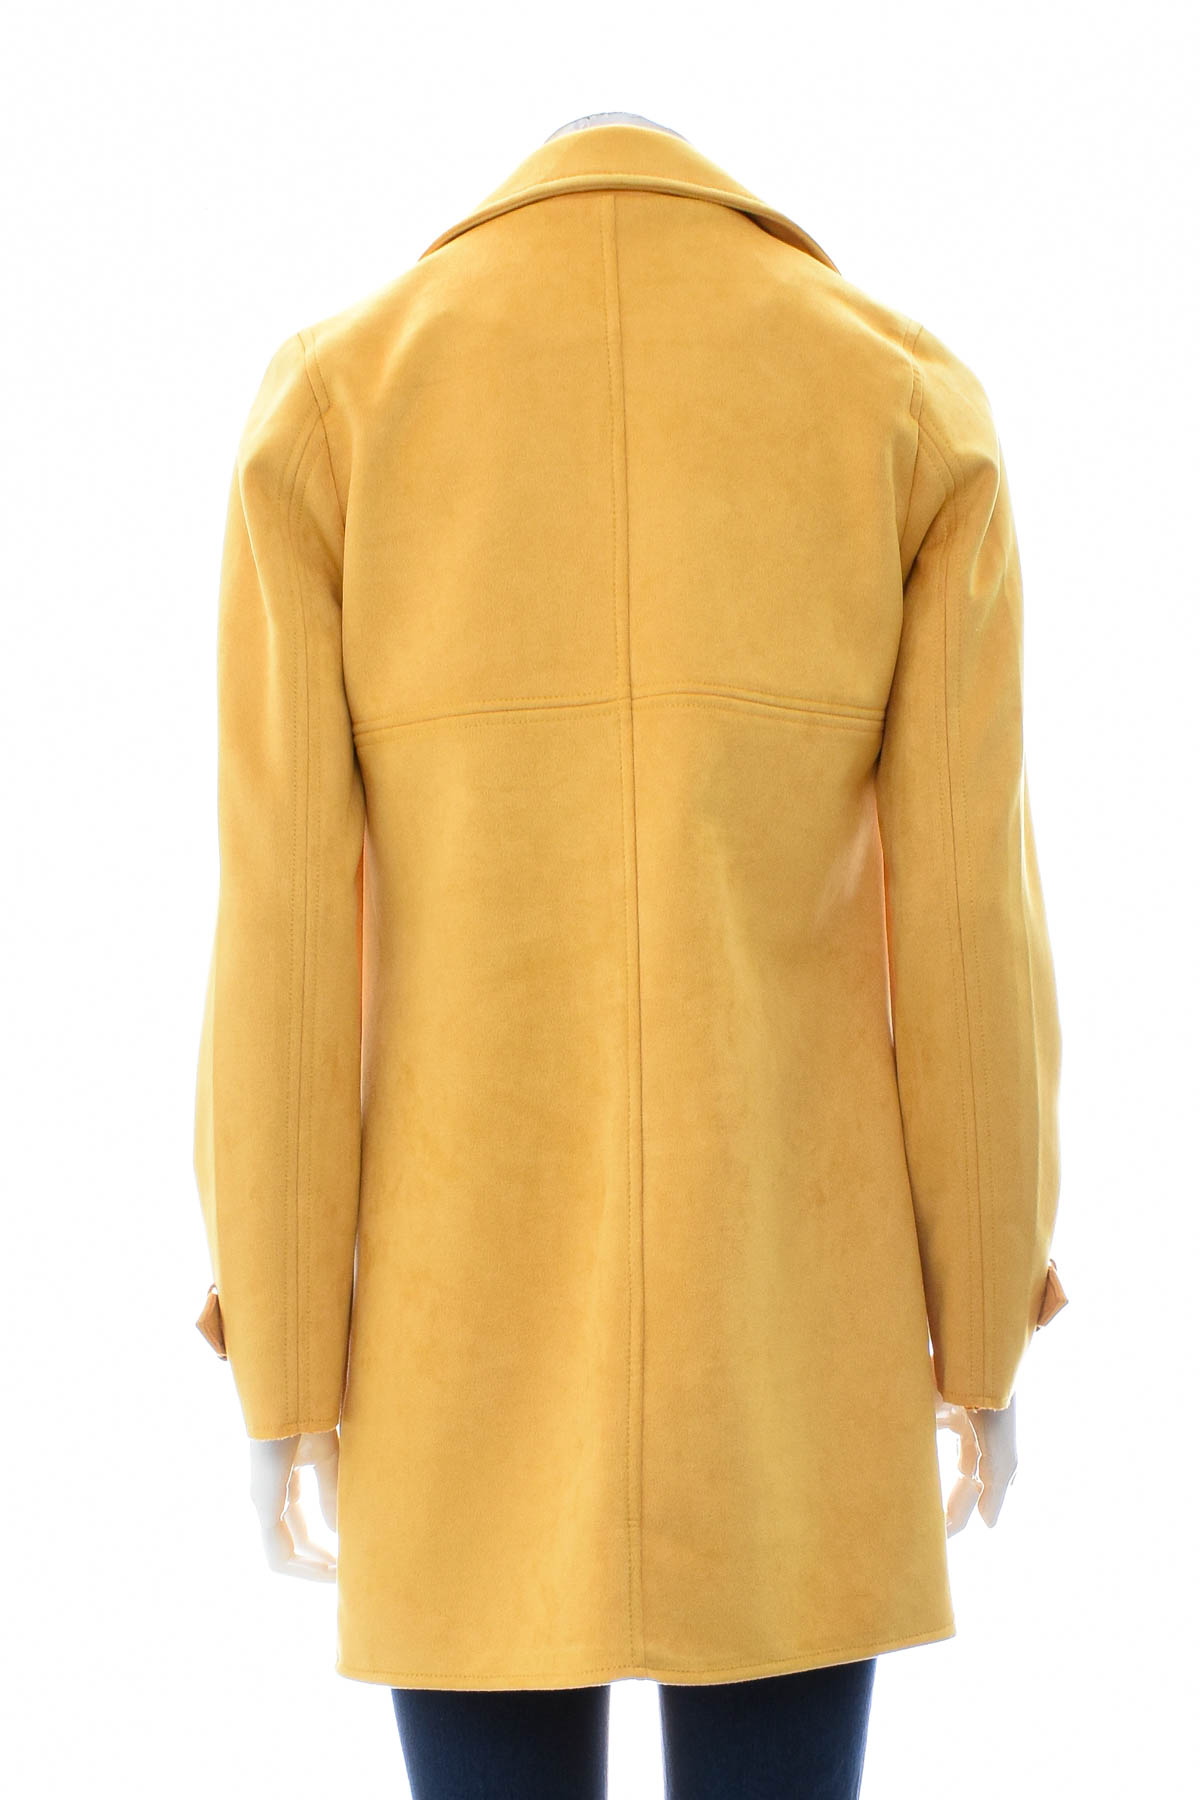 Women's coat - Orsay - 1